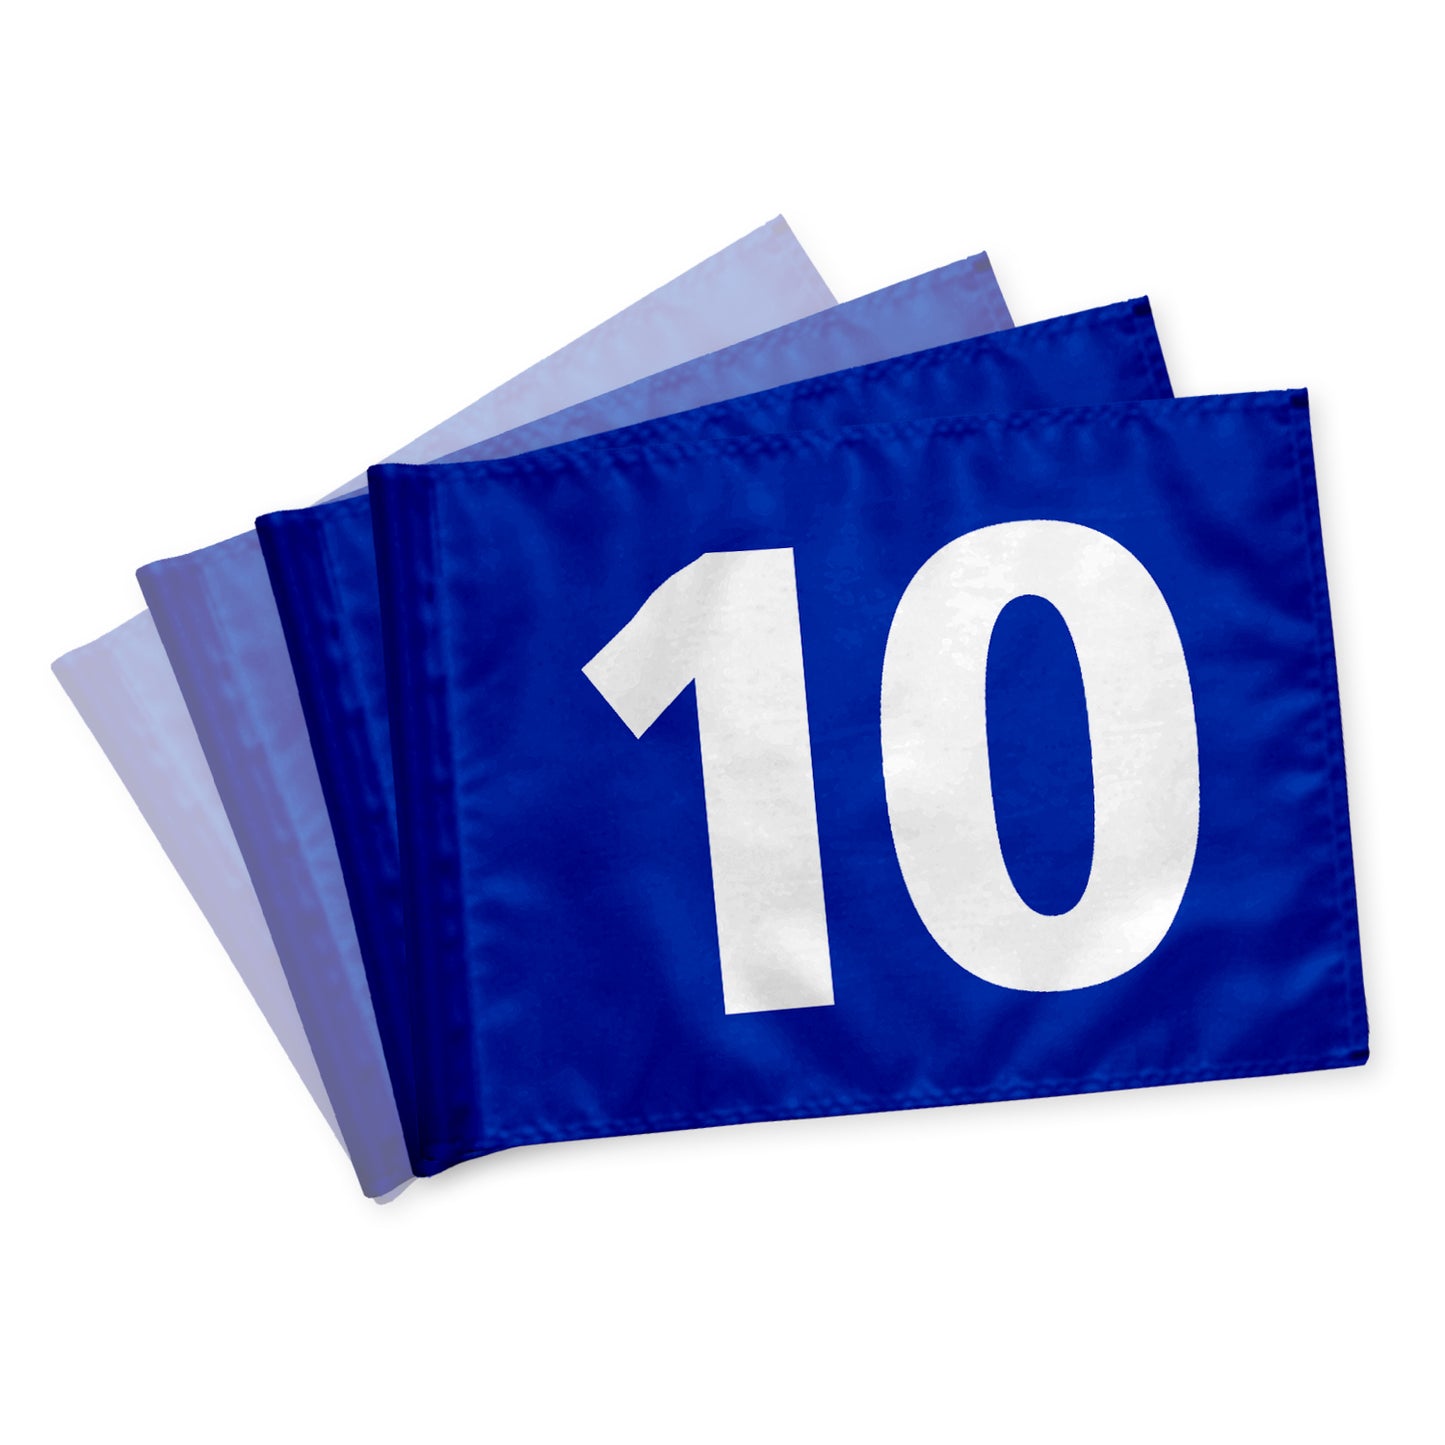 Golfflag 10-18, blå med hvide tal, nylon flagdug